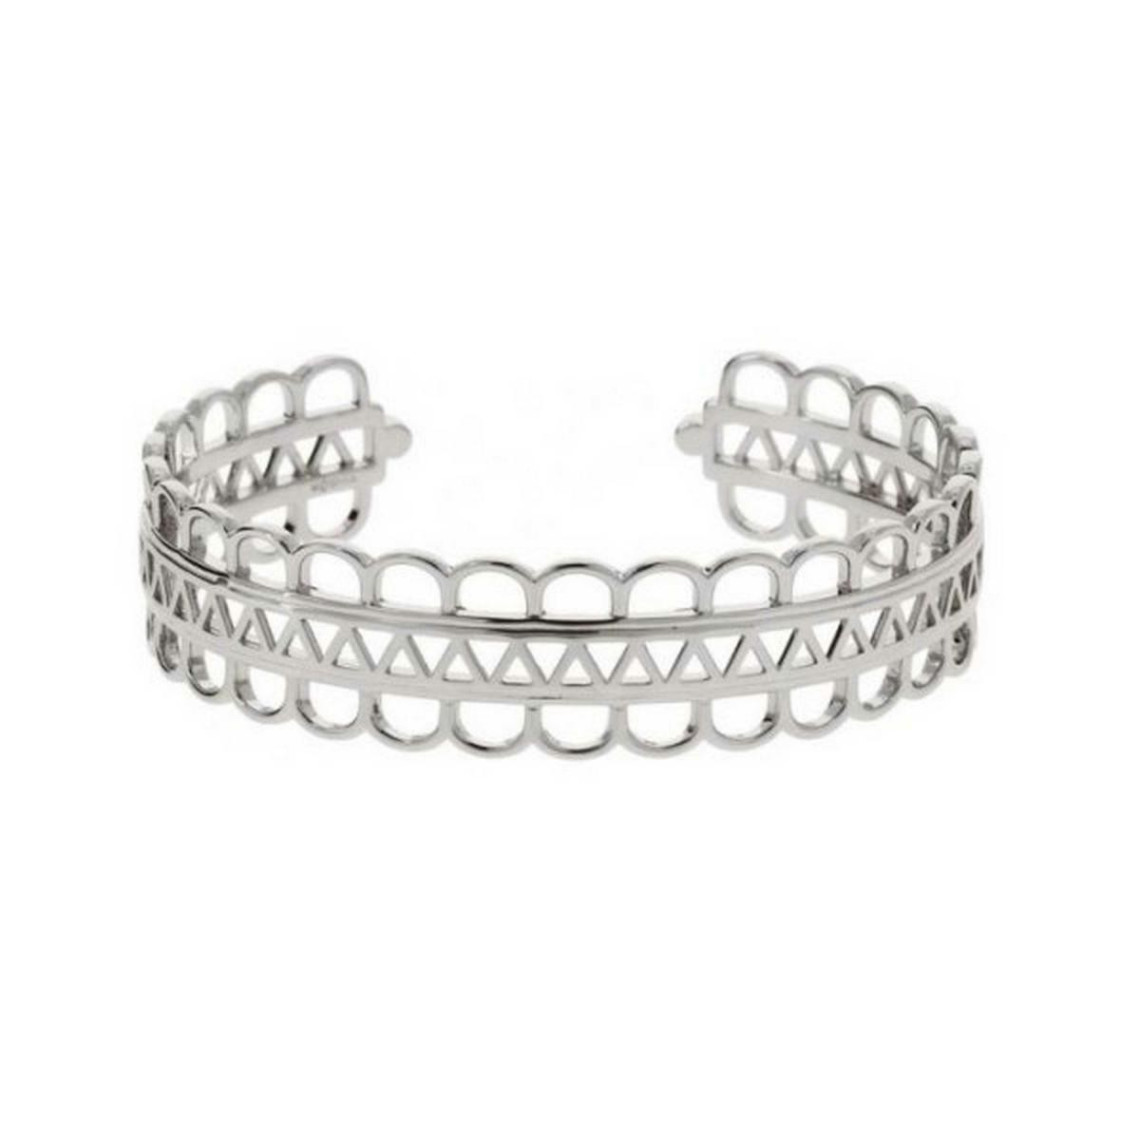 bracelet kosma stella jwbb00015-argent - métal argenté femme